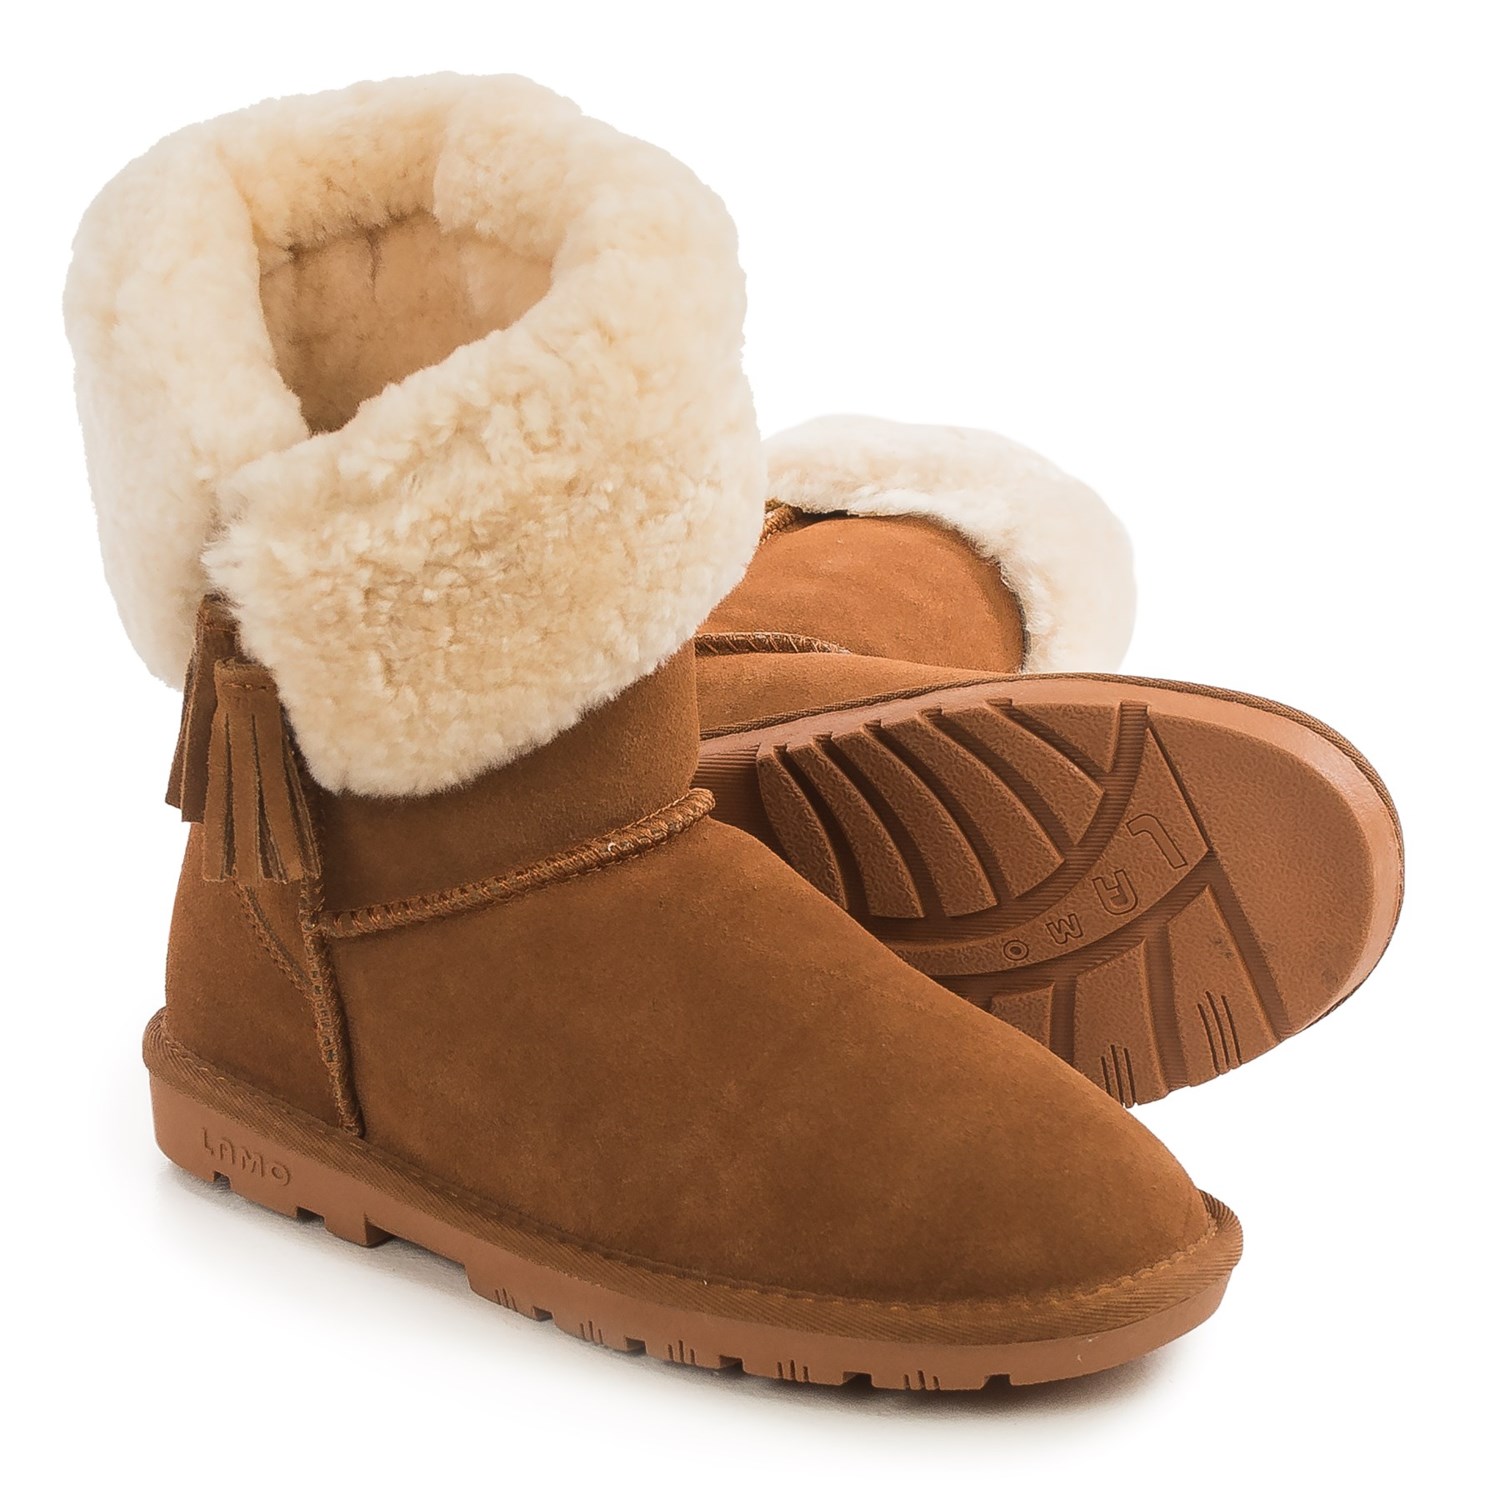 LAMO Footwear Kye Tassel Sheepskin Boots – Suede (For Women)